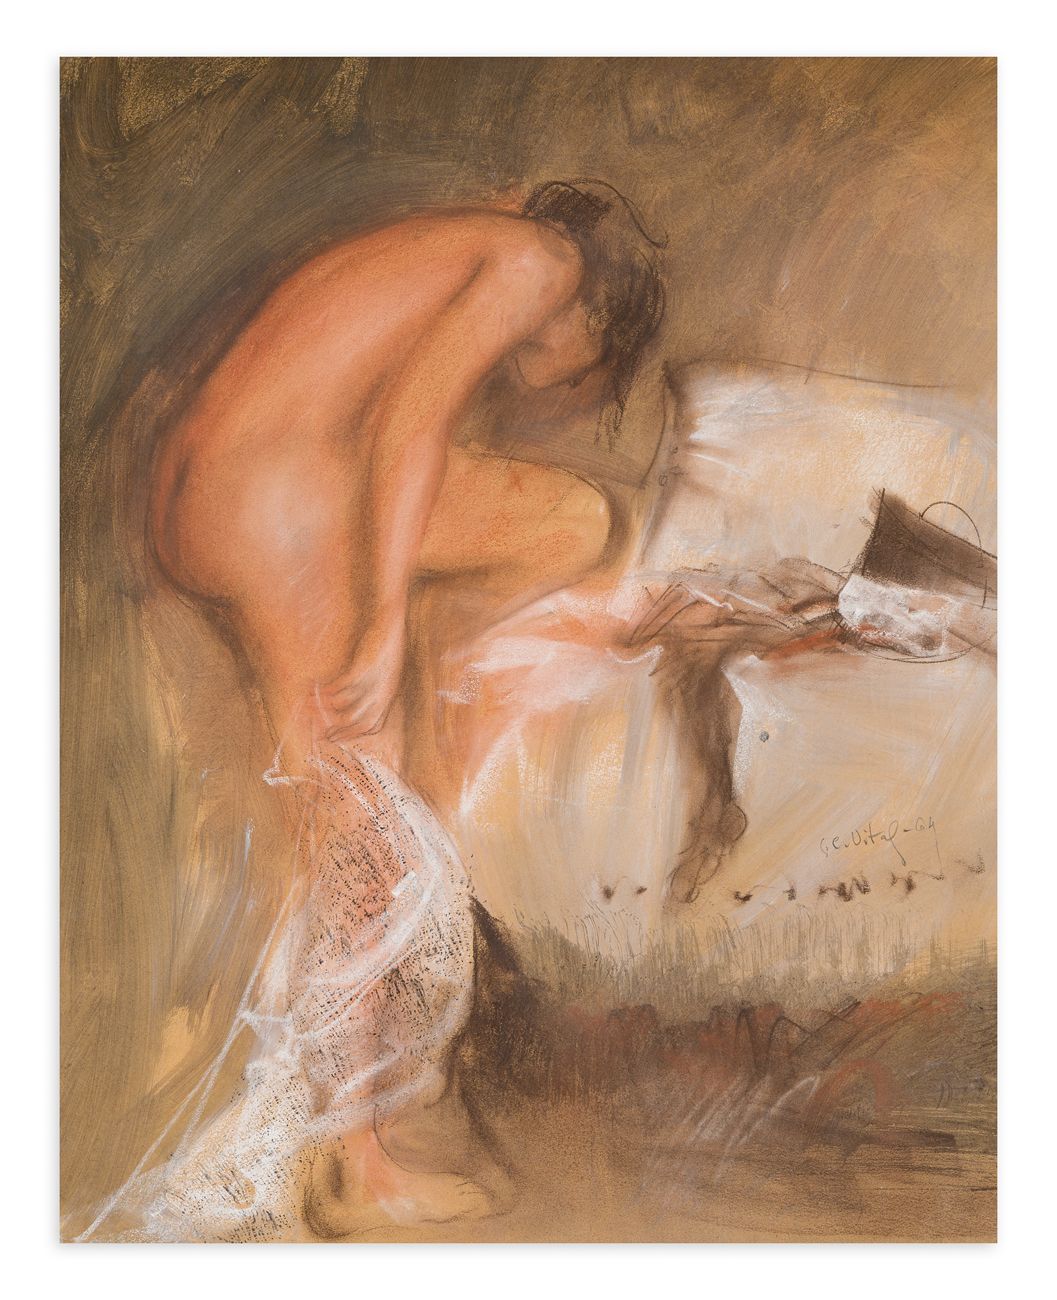 GIANCARLO VITALI (1929-2018) - Nudo, 1964 Pastell auf Papier

68x56 cm

Untersch&hellip;